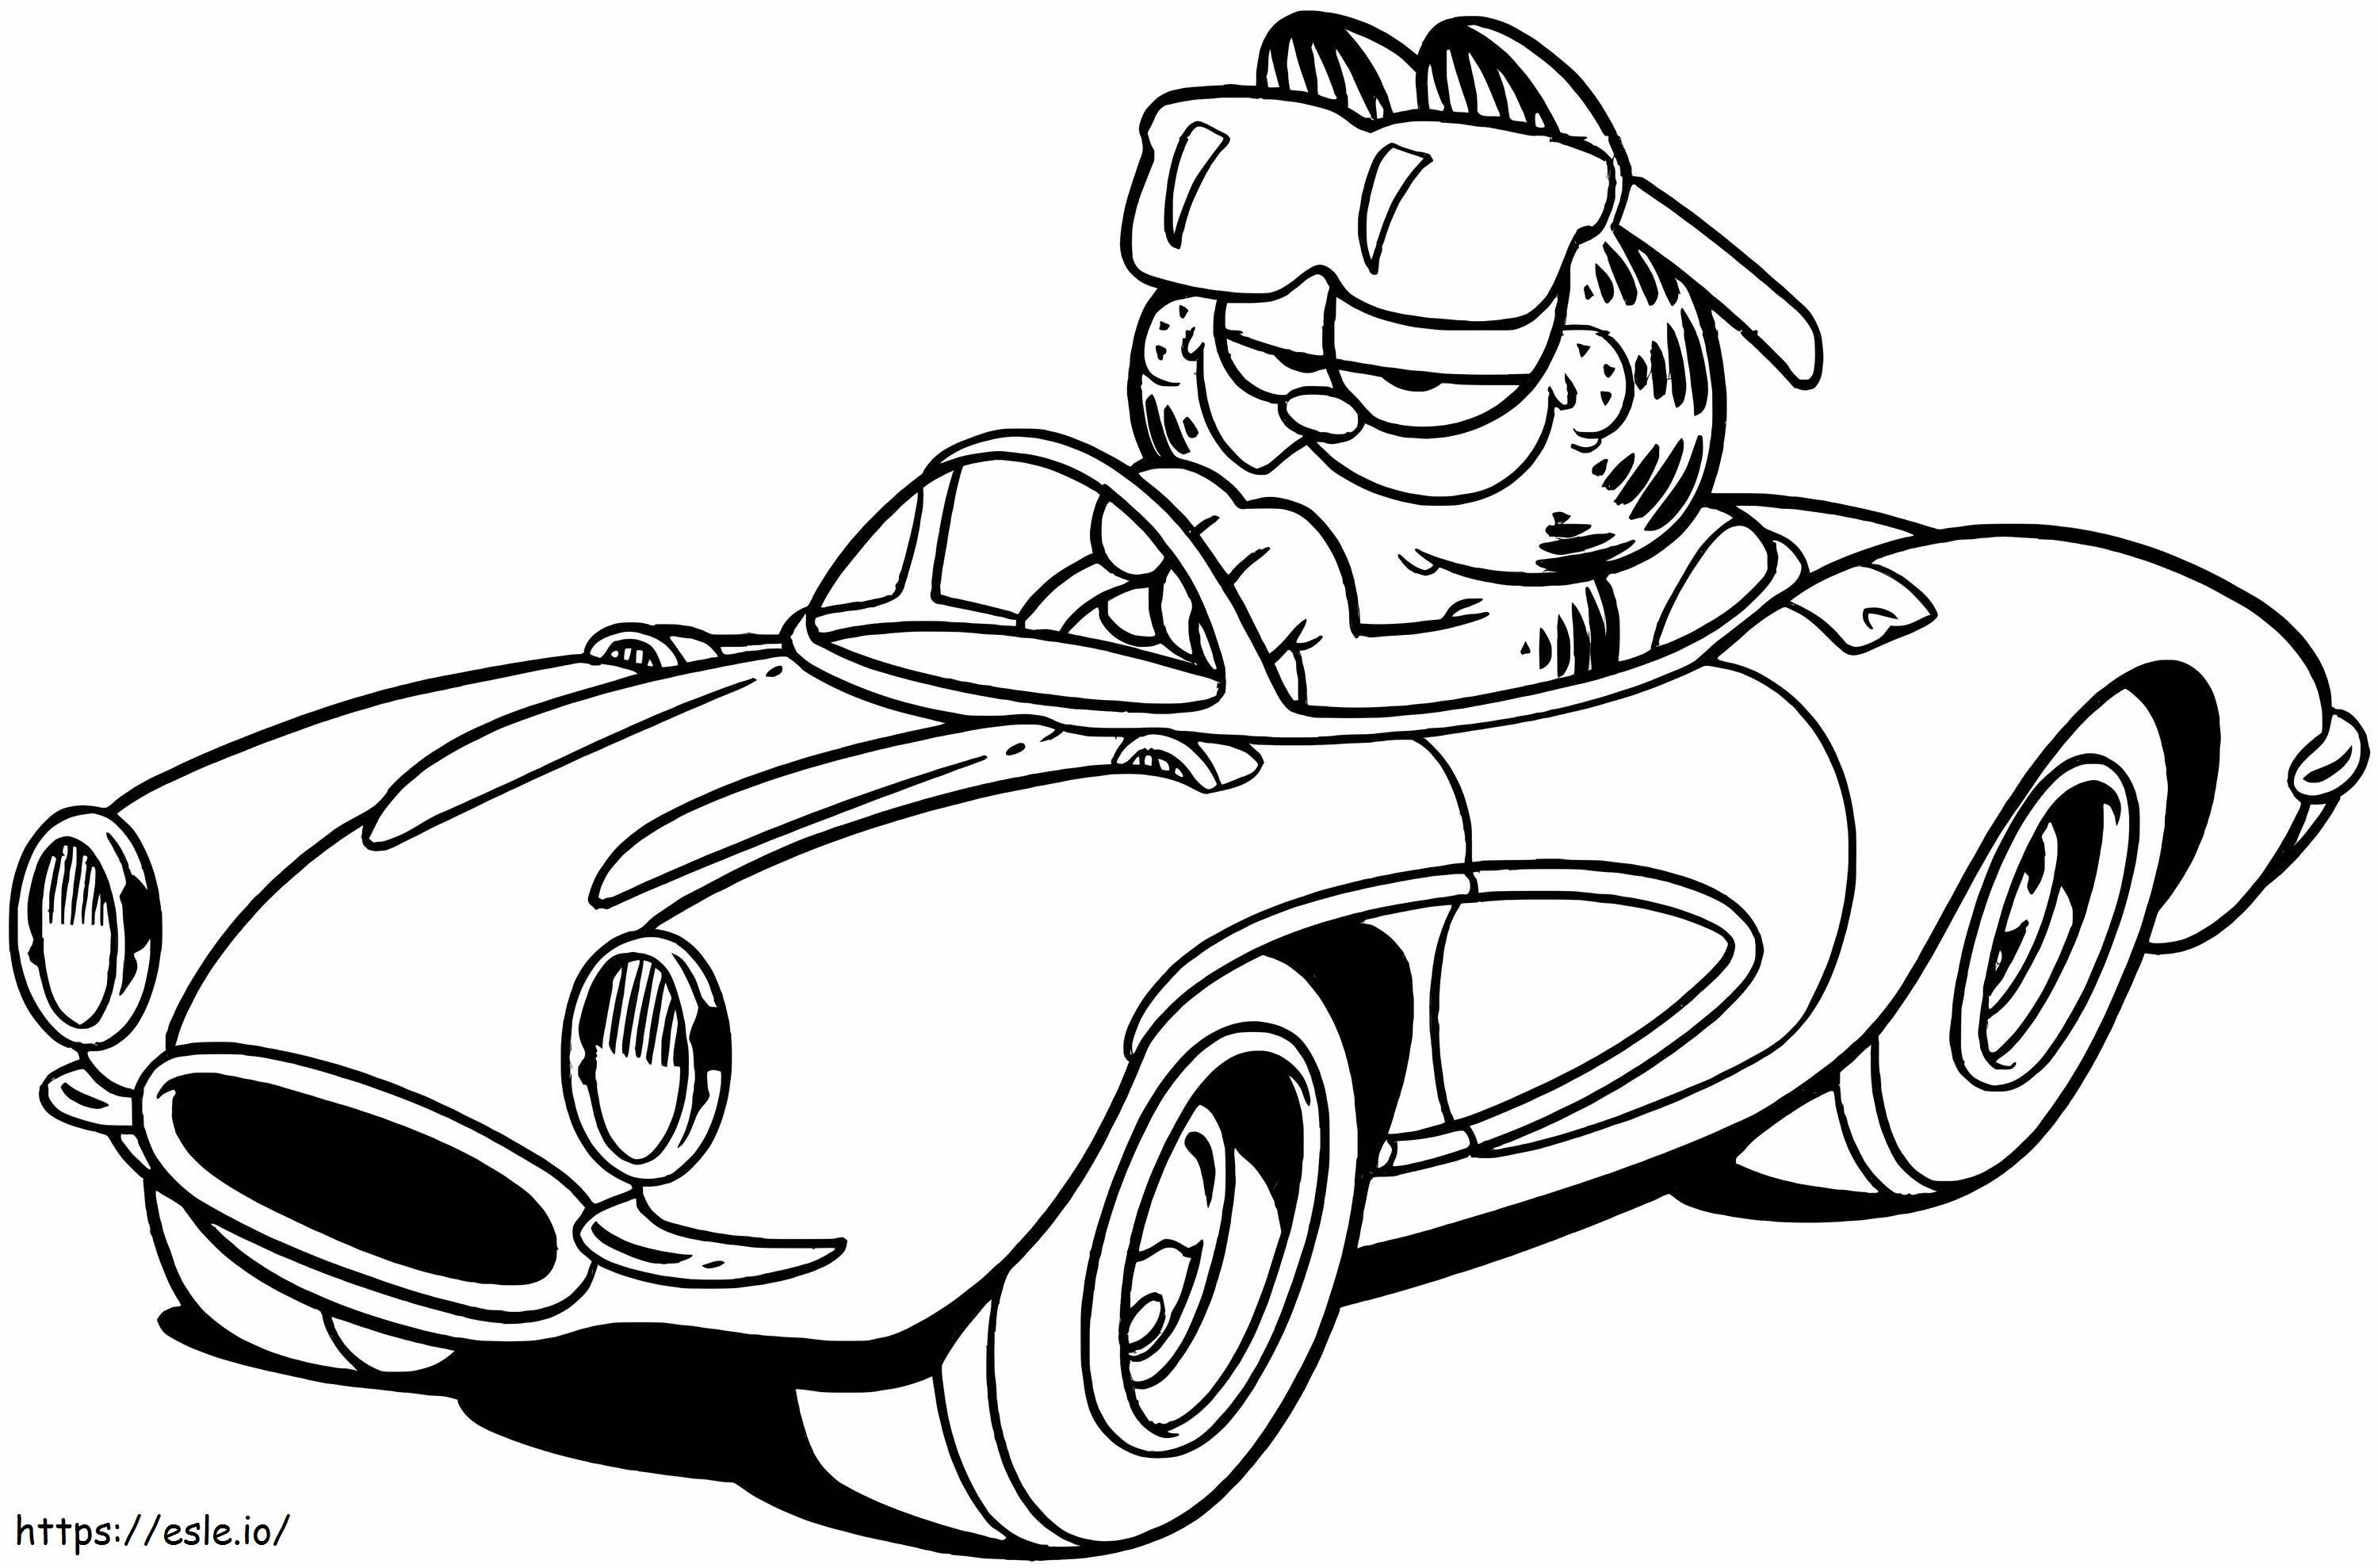 Coloriage Garfield dans la voiture à imprimer dessin